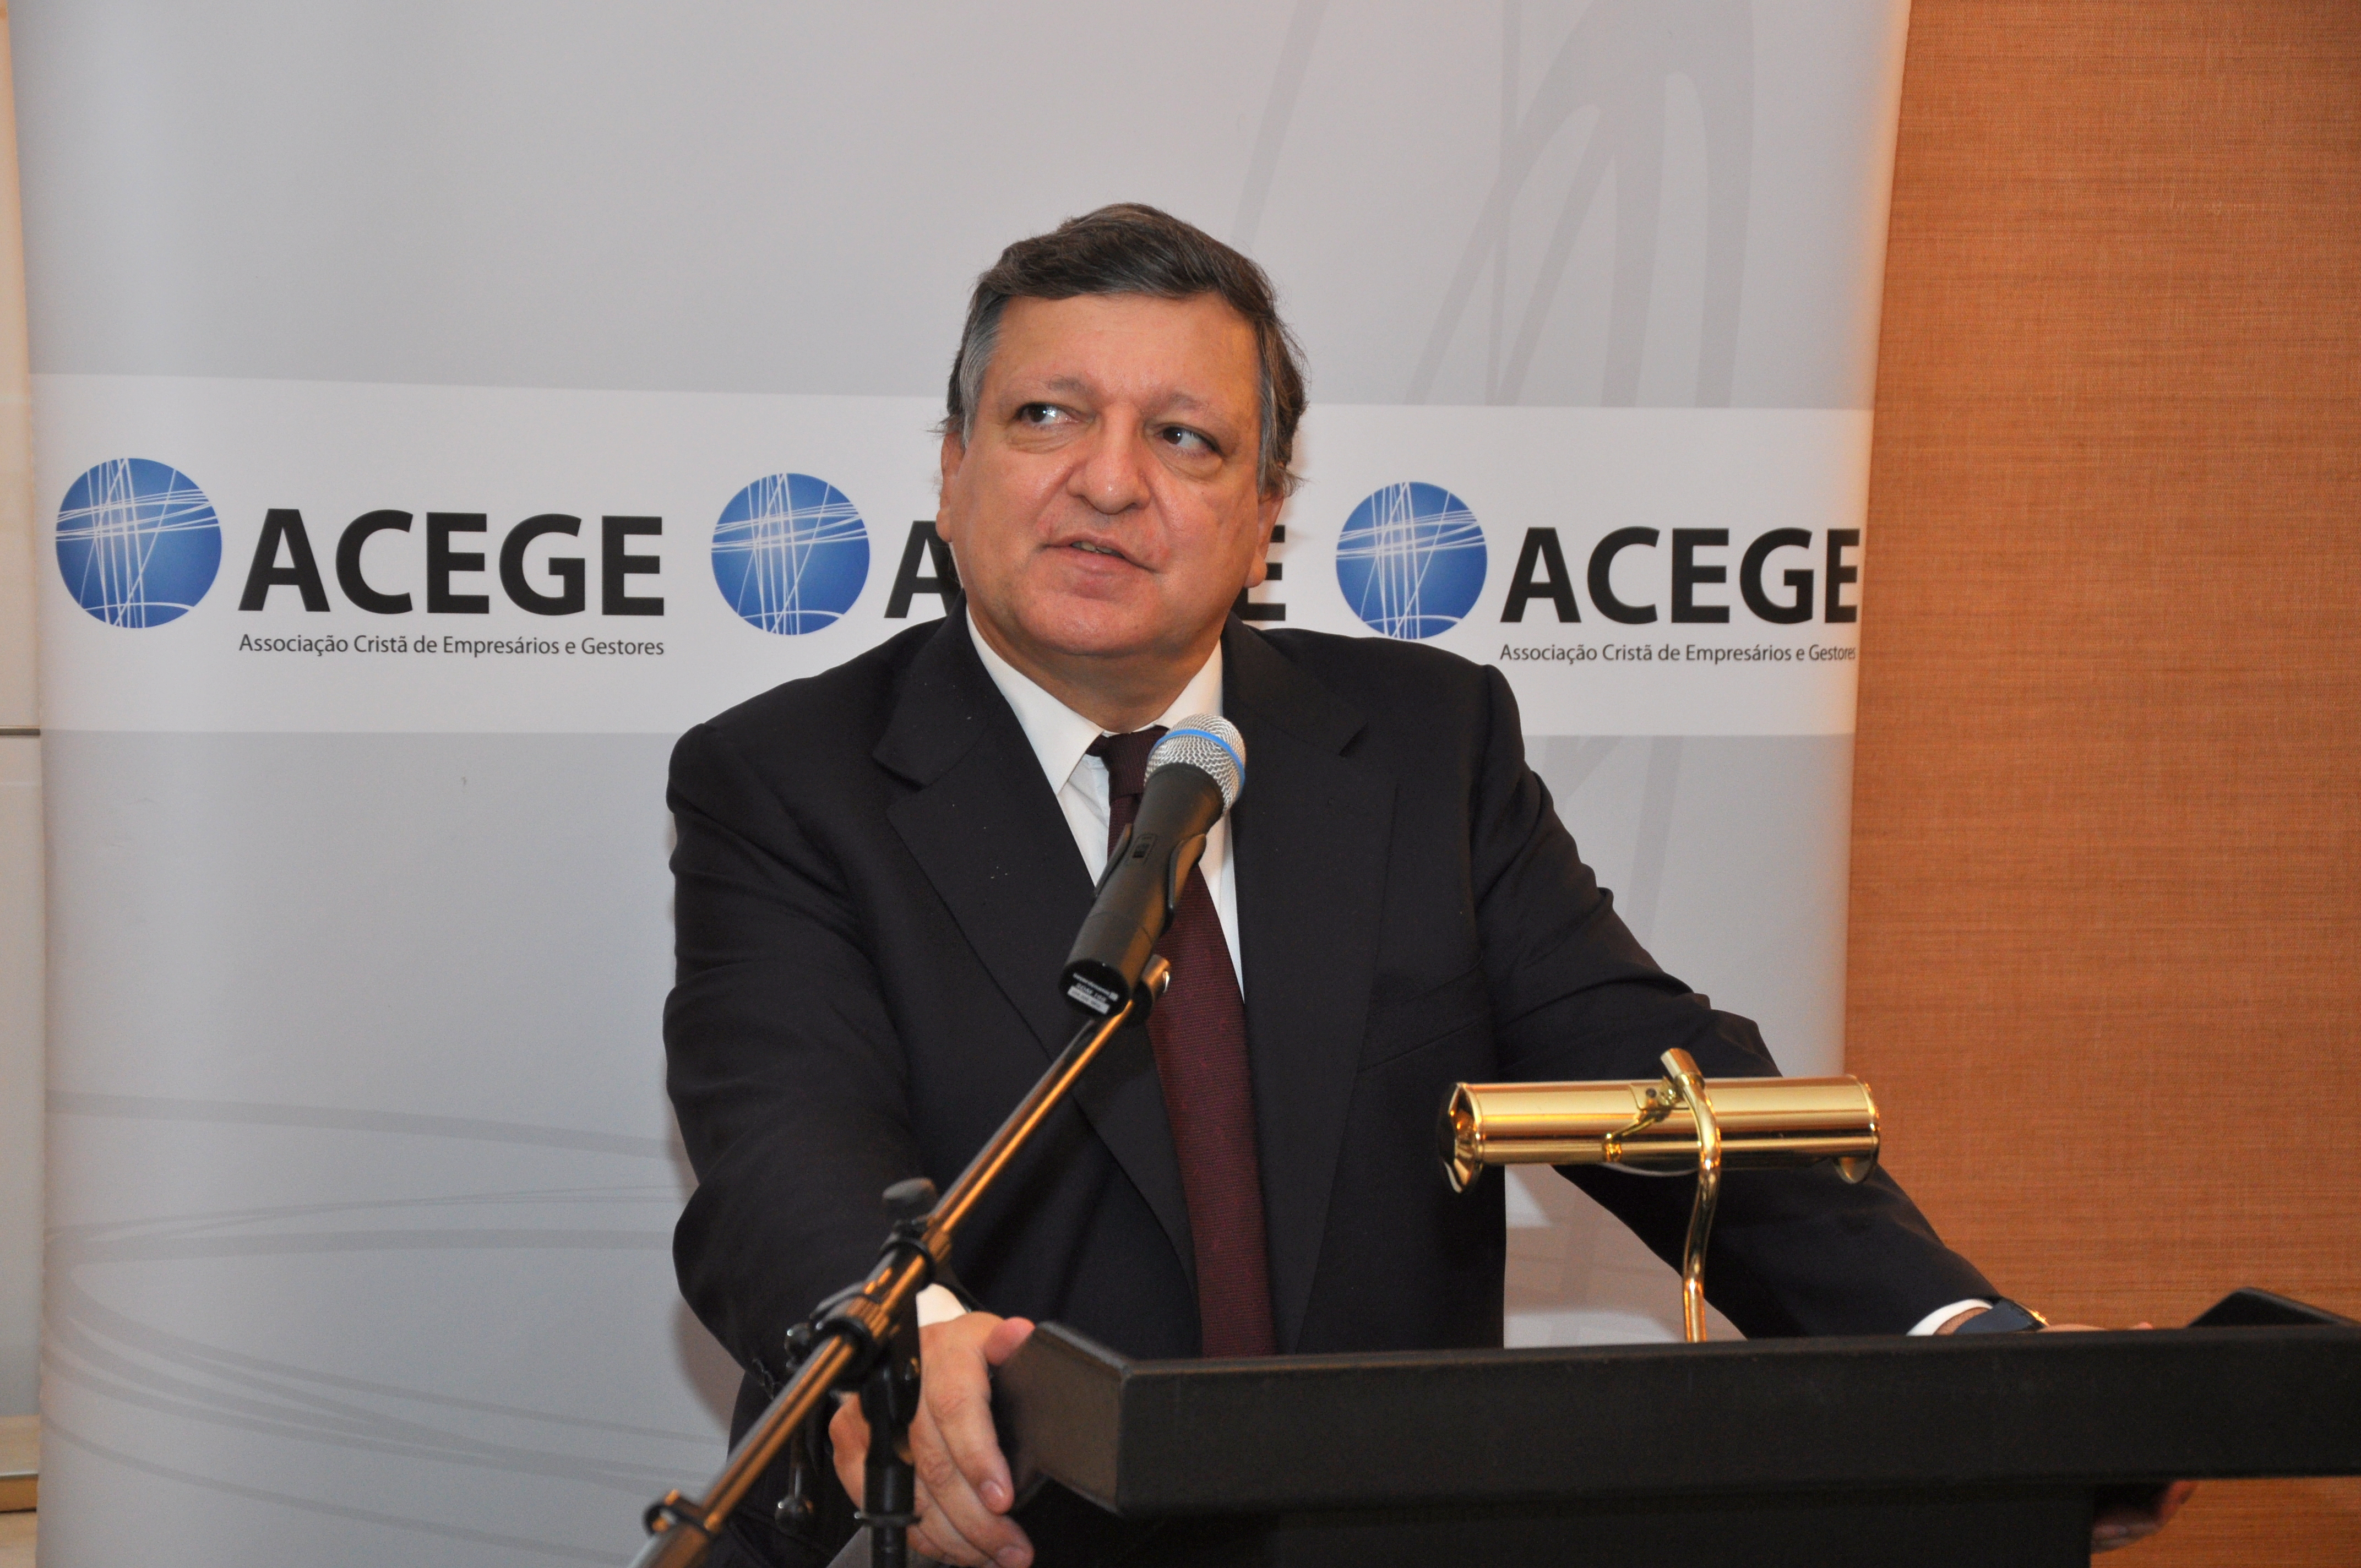 Almoço Debate com Dr. José Manuel Durão Barroso